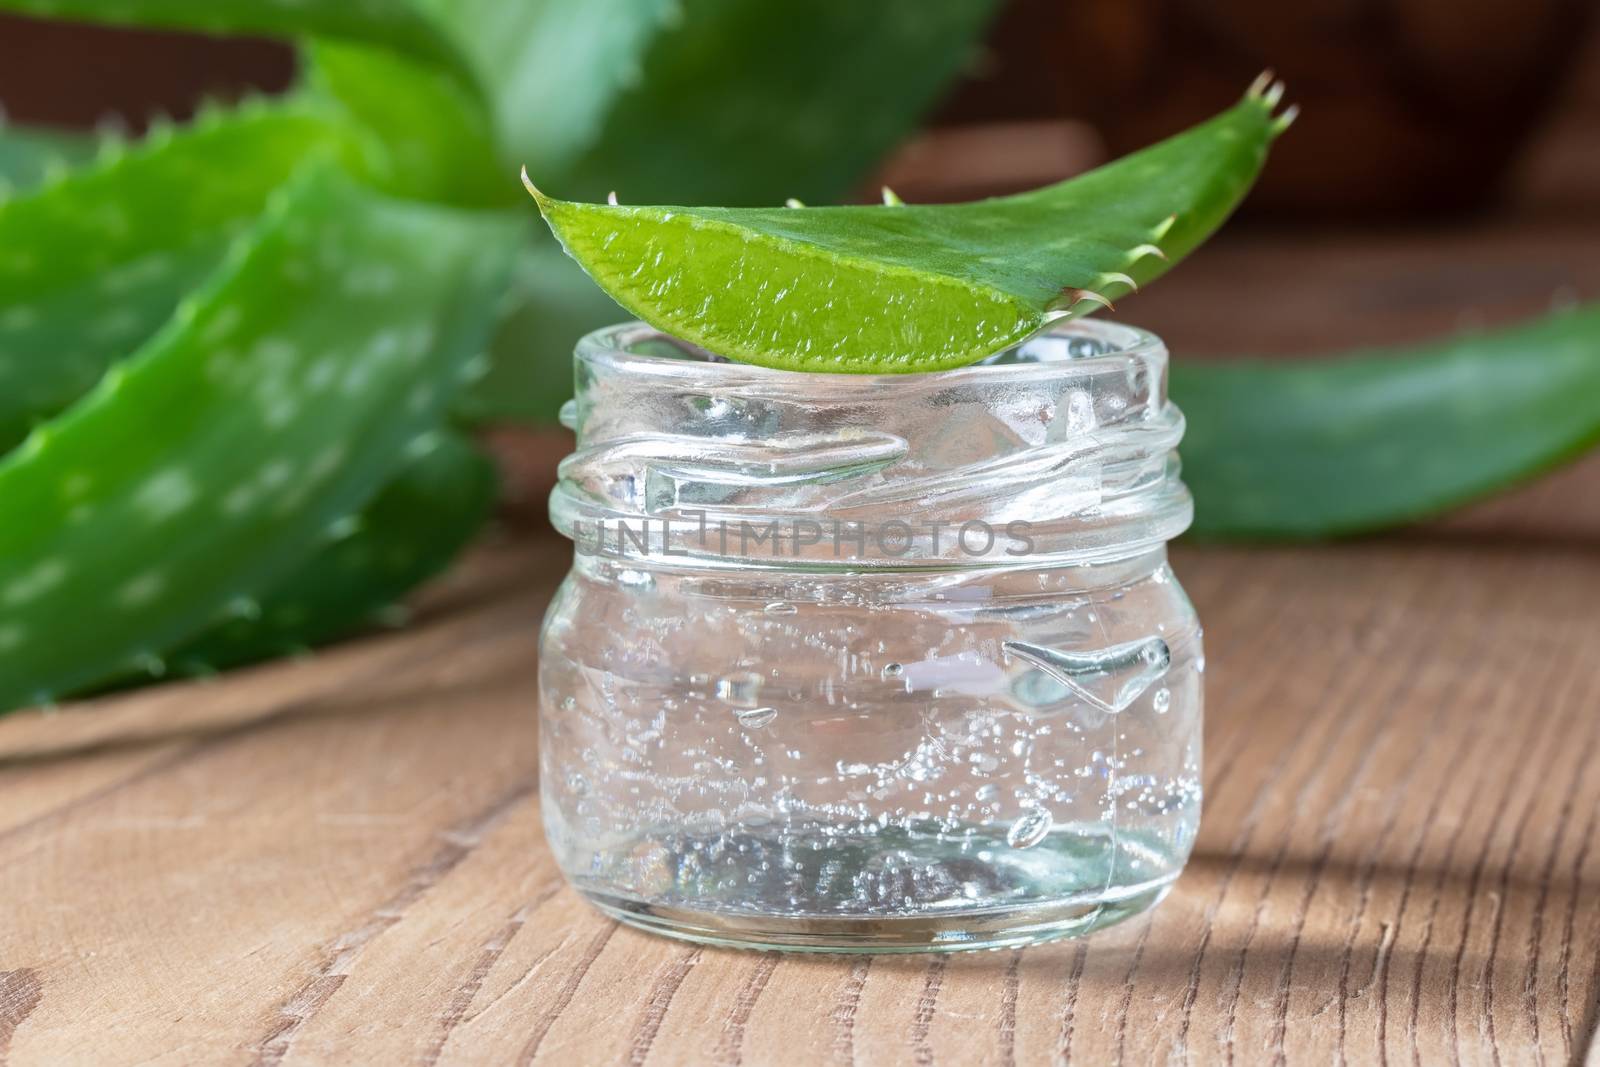 Aloe vera gel in a glass jar with fresh leaf